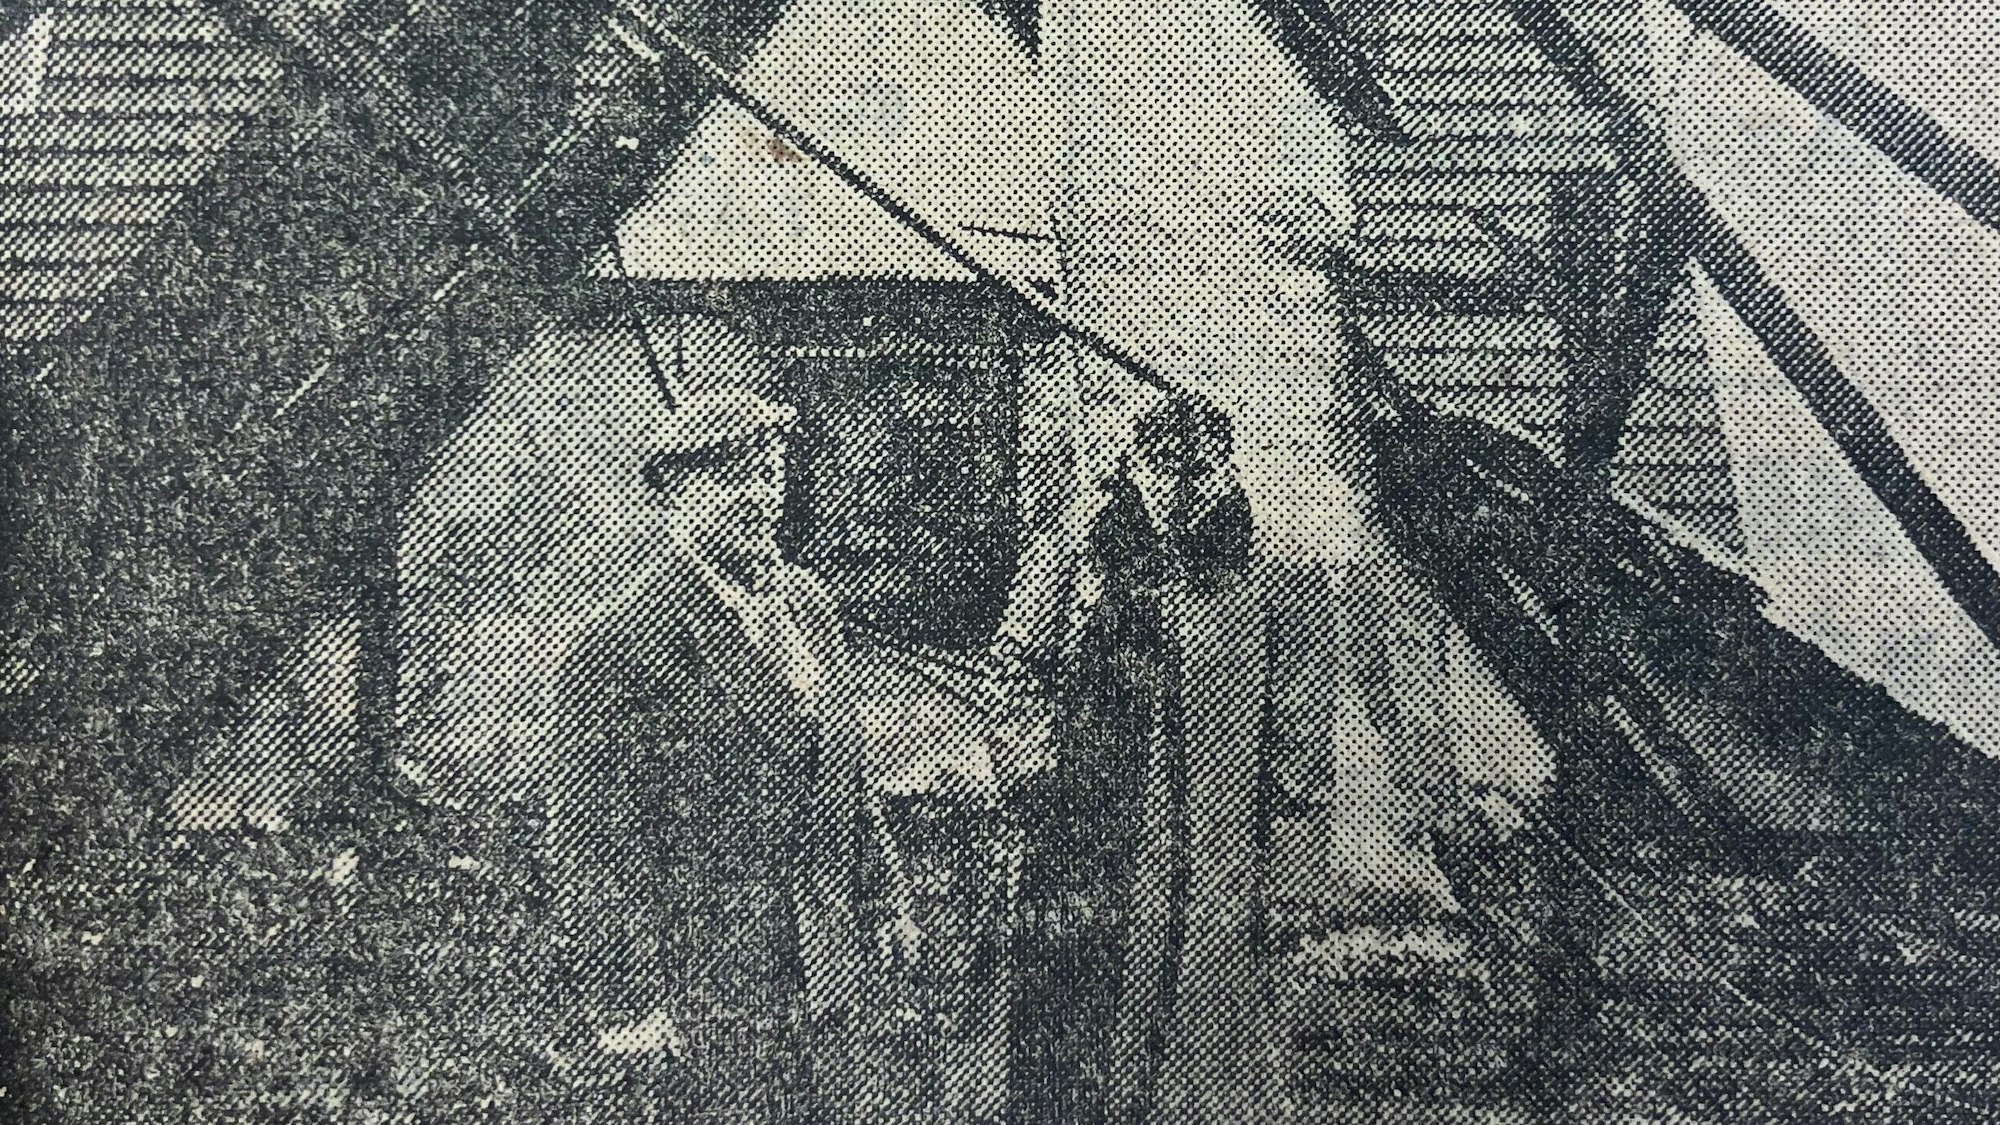 Zwei Männer stehen in einem abgebrannten Dachstuhl.